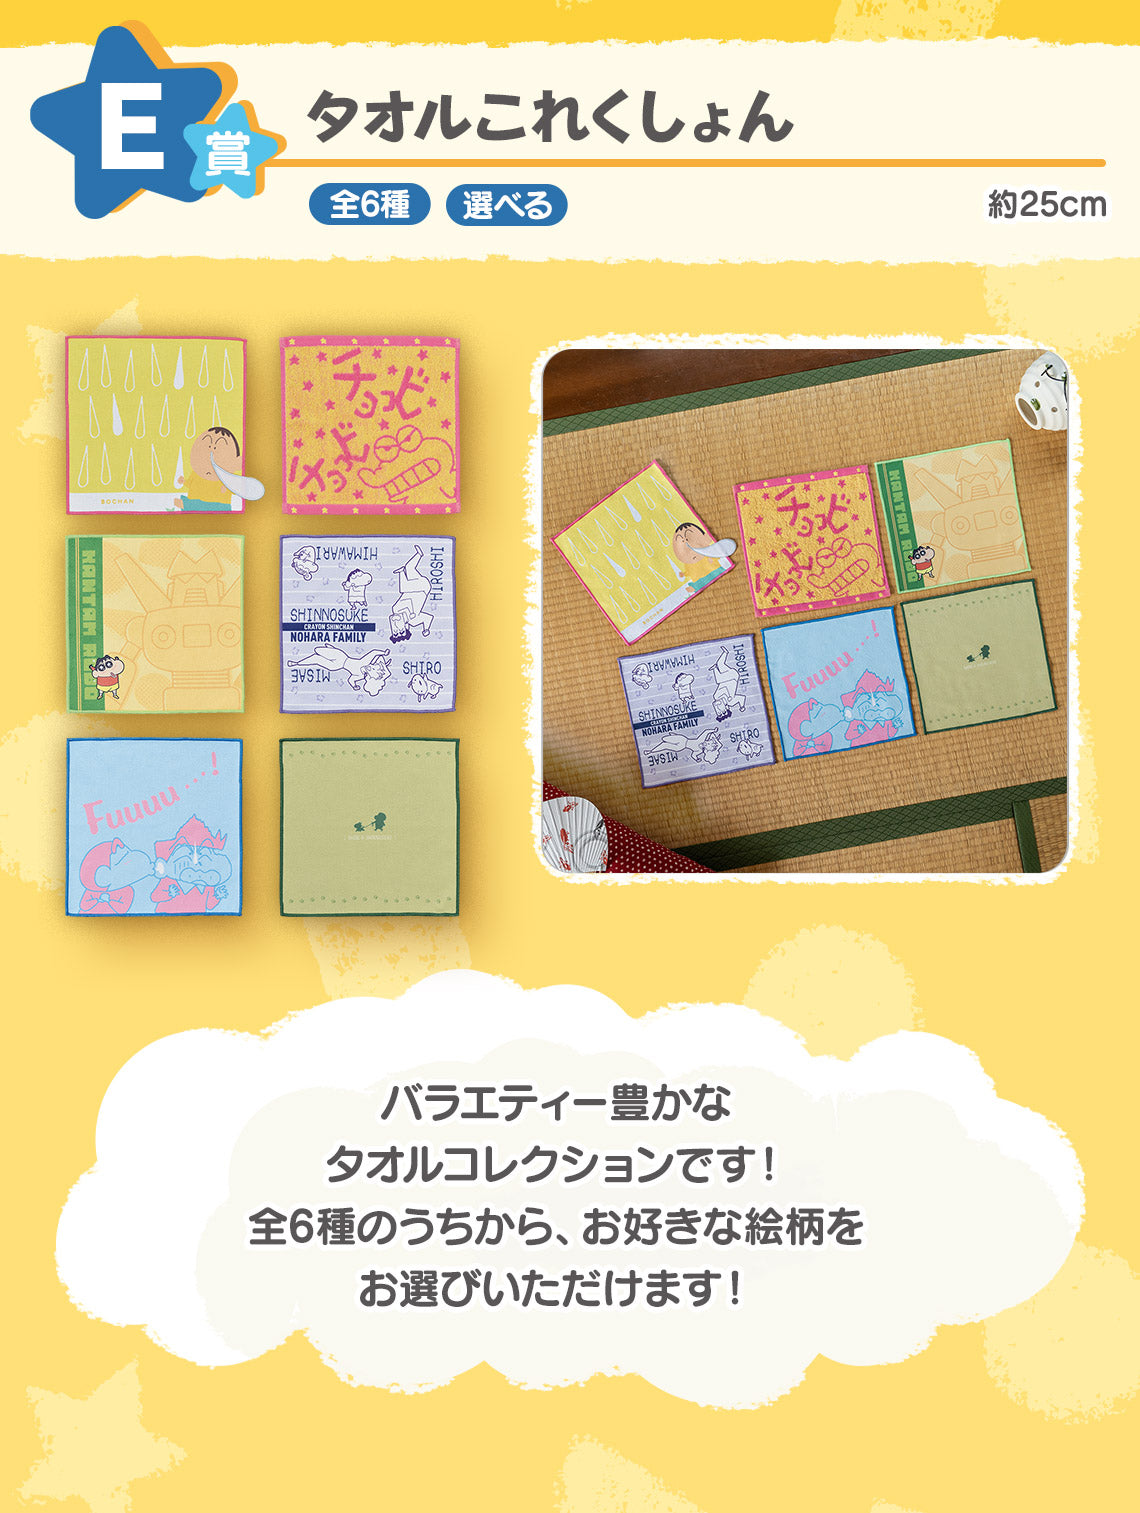 Ichiban Kuji Crayon Shin Chan Me And My Friends At Large-Bandai-Ace Cards &amp; Collectibles